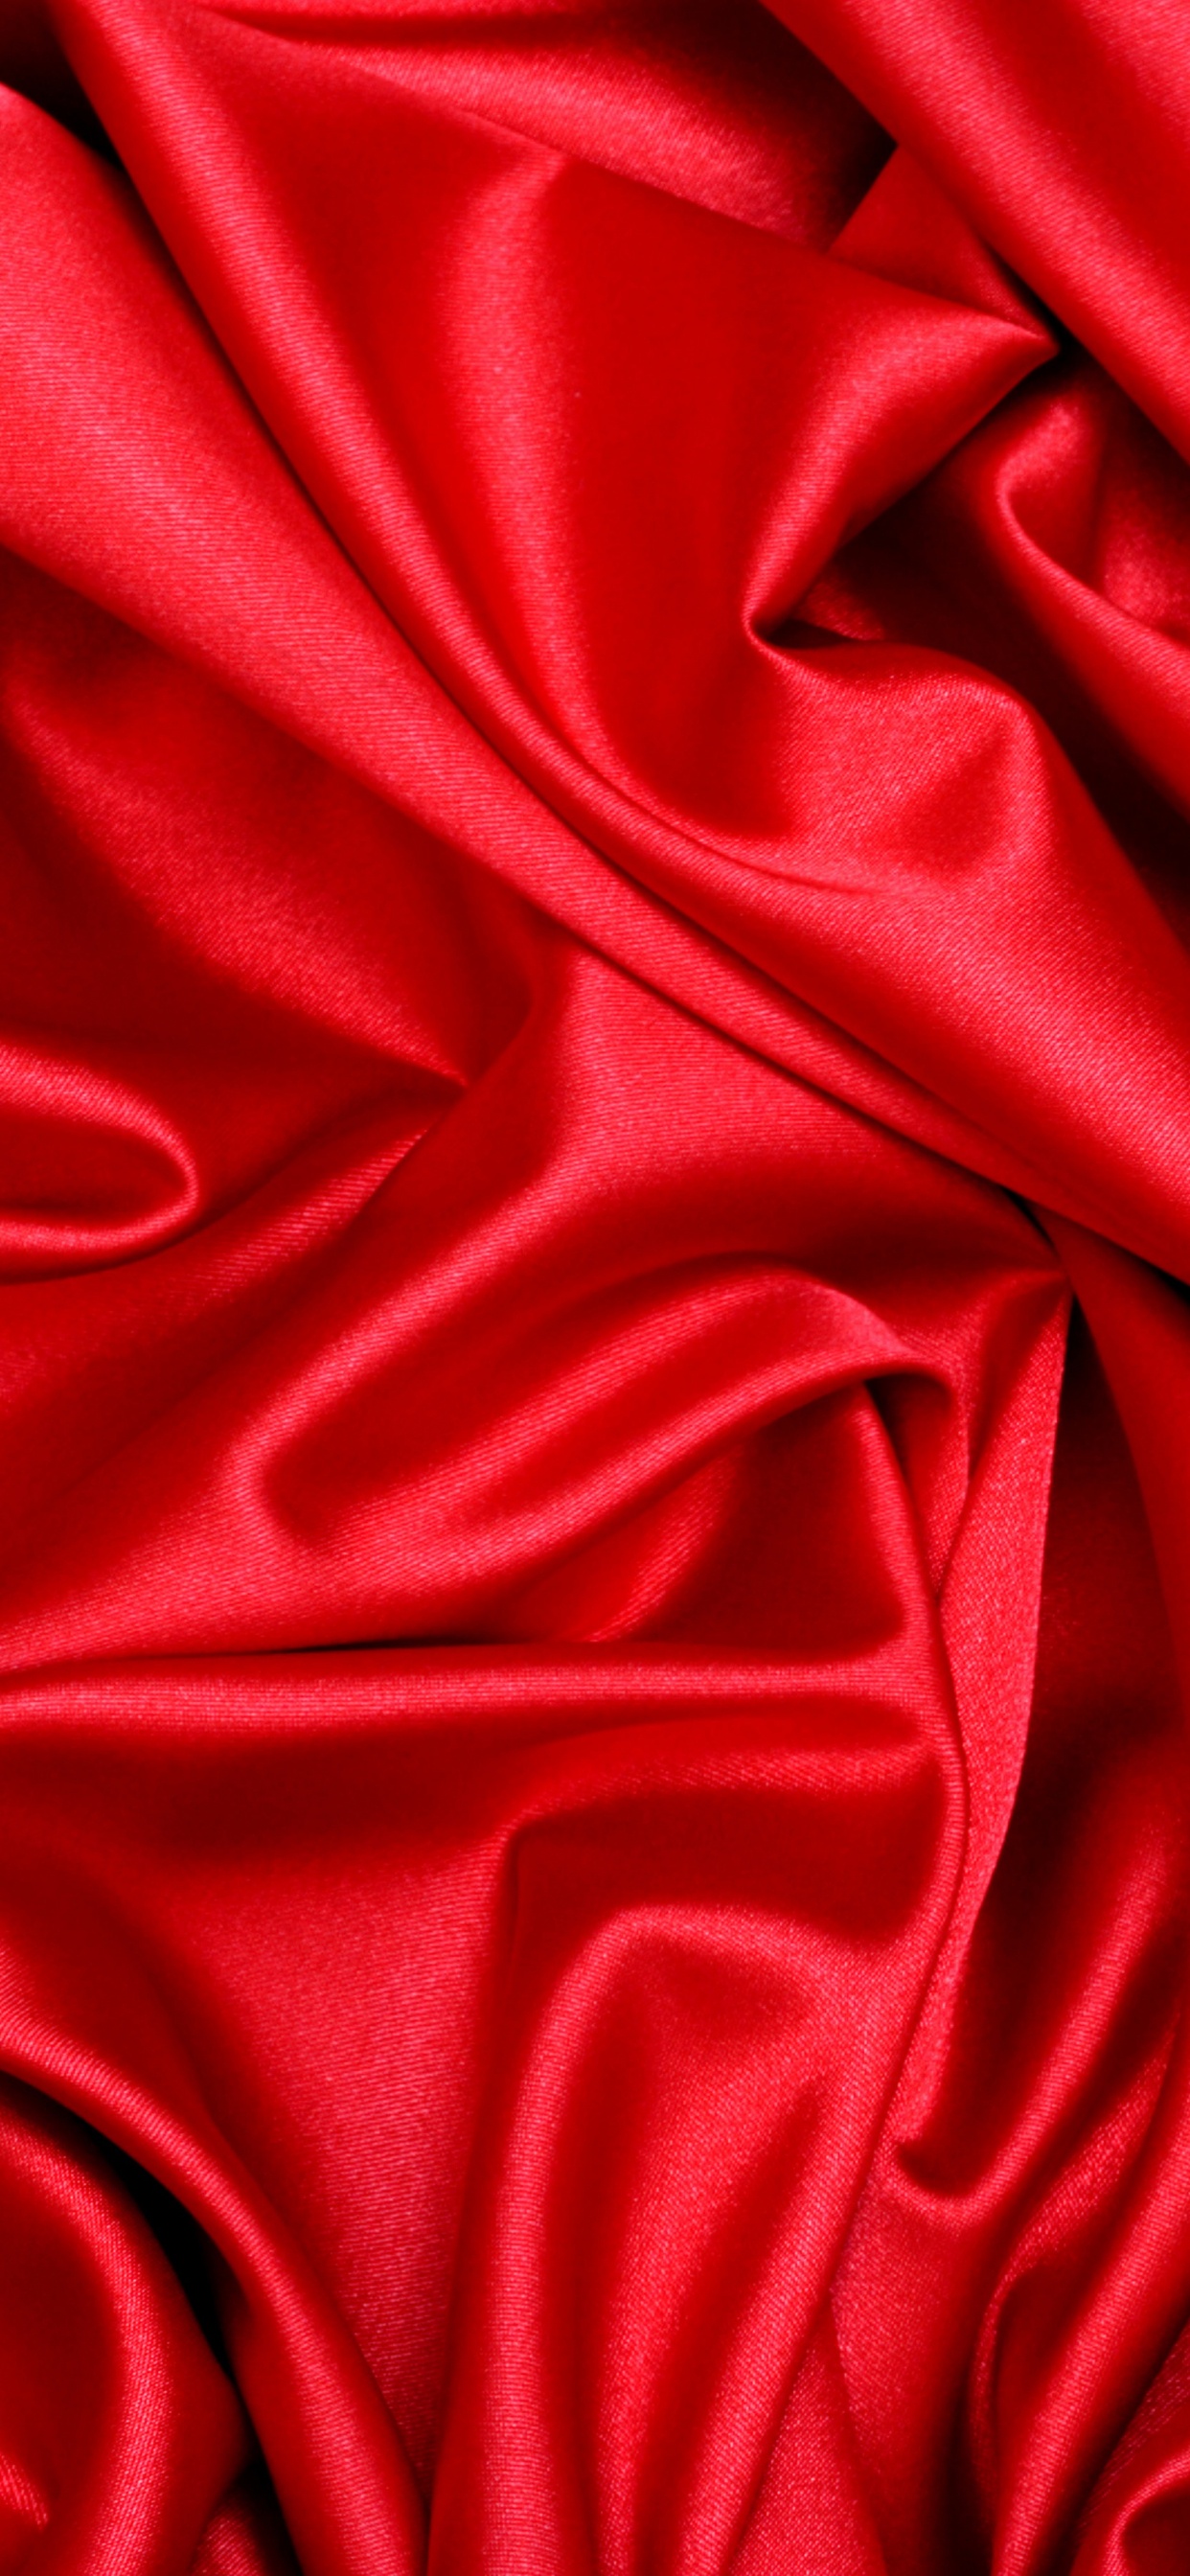 Textil Rojo en Fotografía de Cerca. Wallpaper in 1242x2688 Resolution